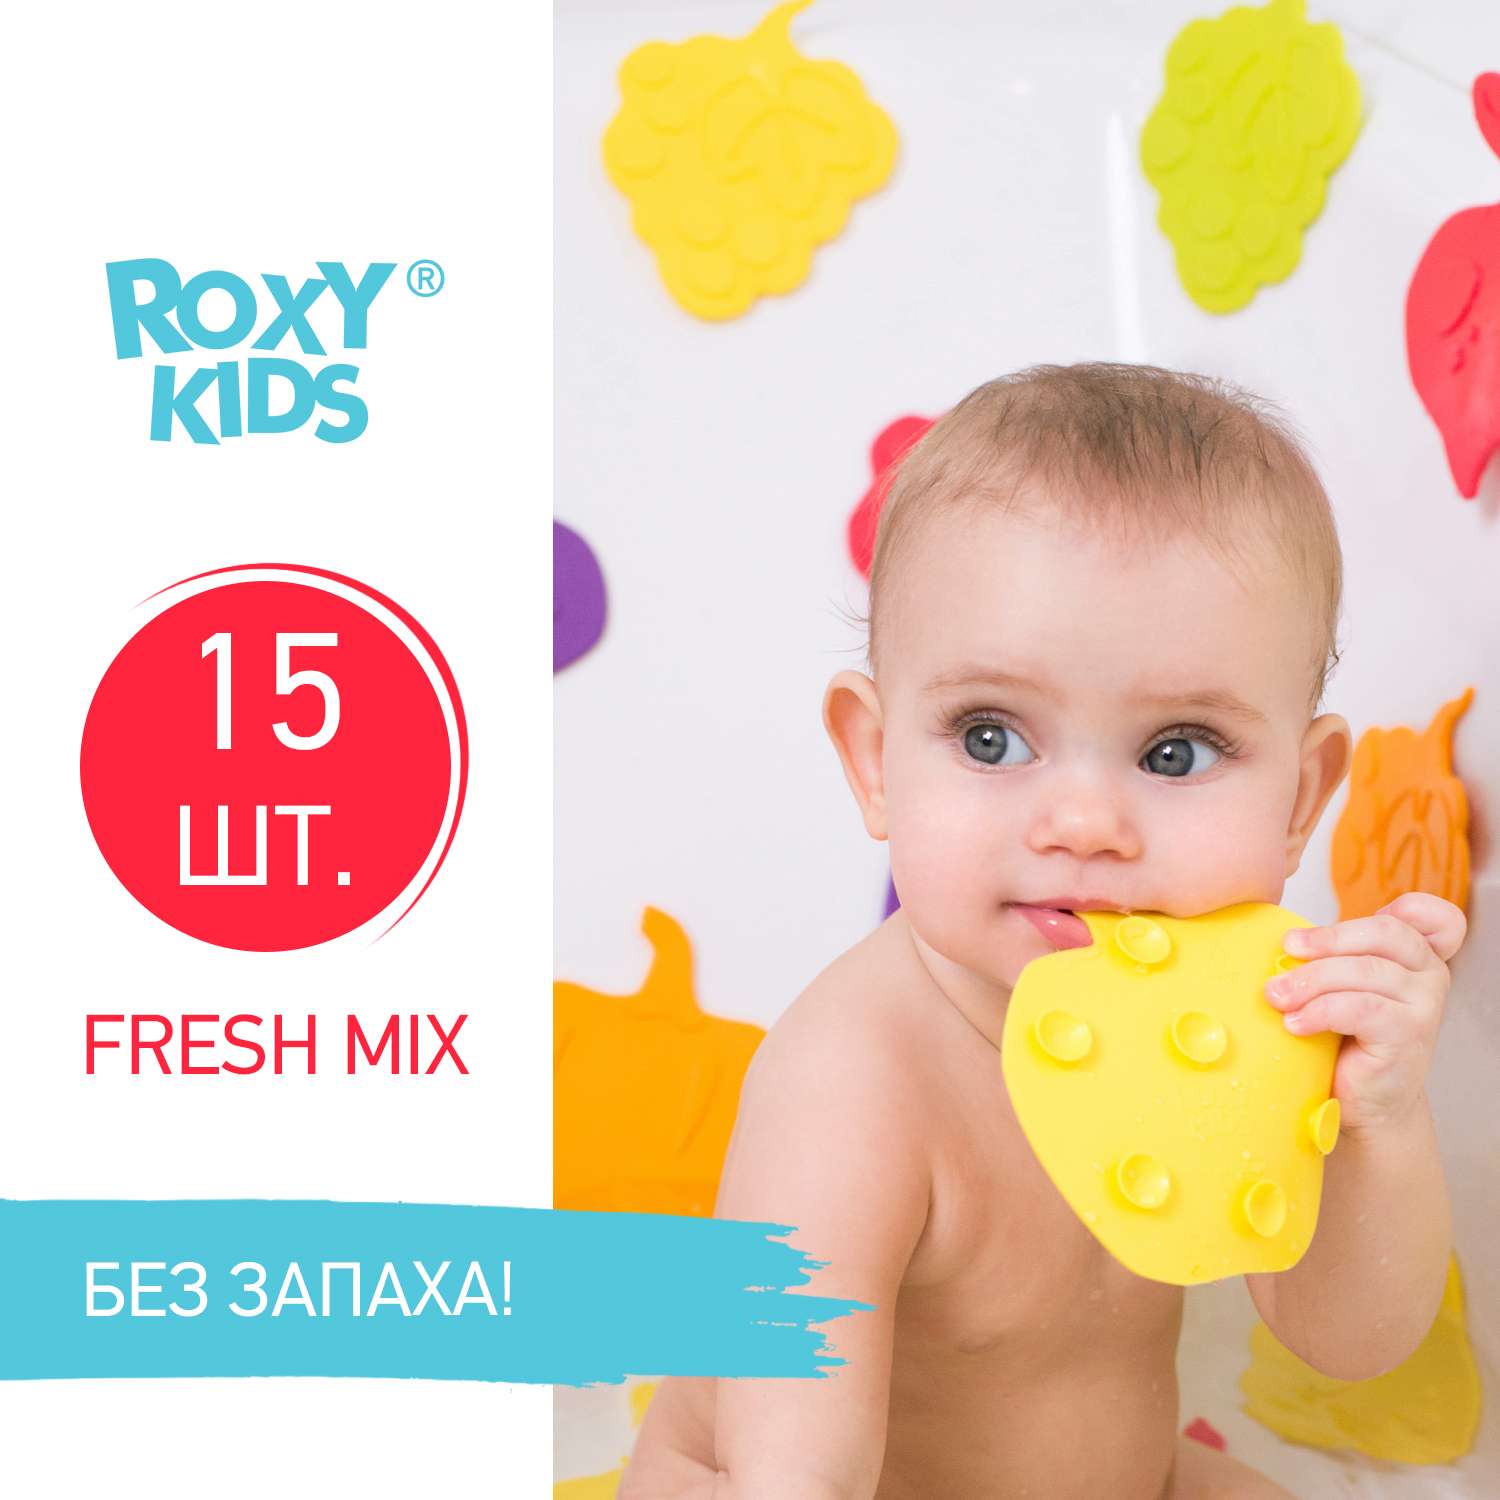 Мини-коврики детские ROXY-KIDS для ванной противоскользящие fresh mix 15 шт цвета в ассортименте - фото 2